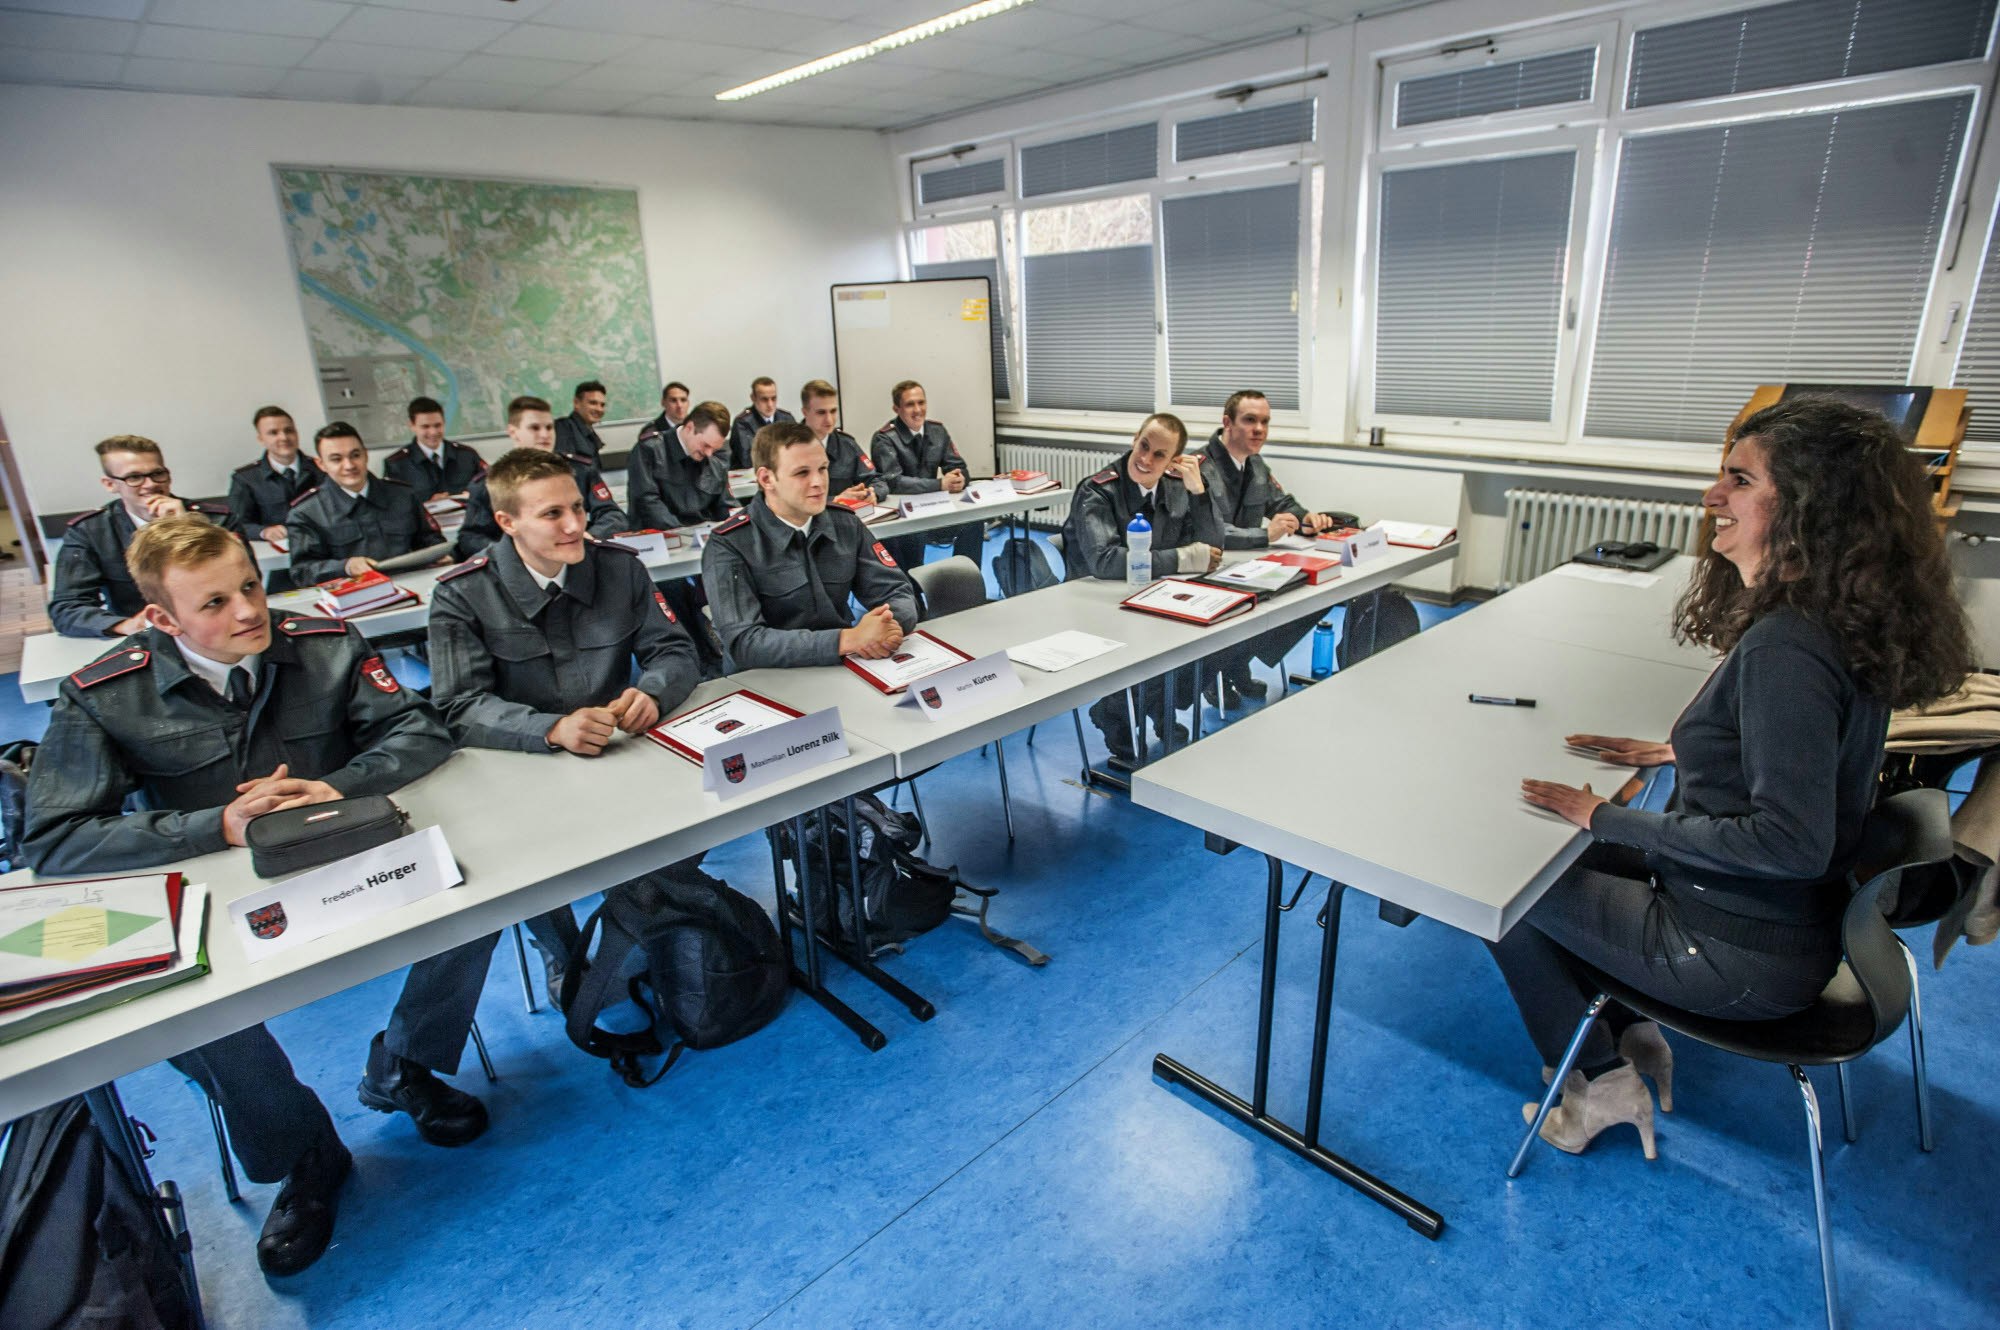 Das Klassenzimmer im Gerätehaus der Freiwilligen Feuerwehr in Schlebusch. Beamtenrecht steht bei Heike Leopold auf dem Stundenplan.